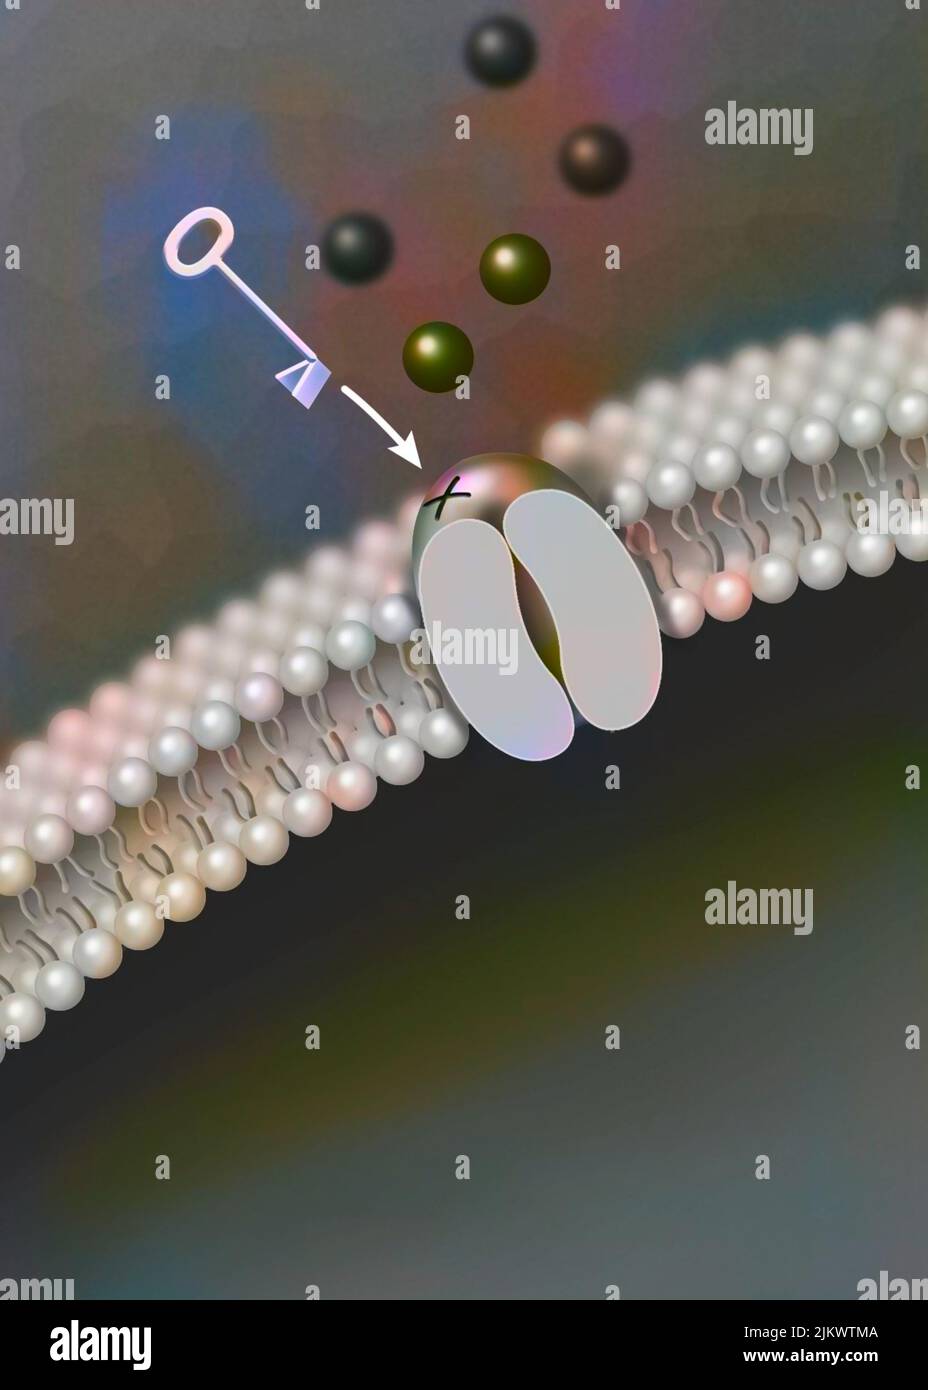 Canale ionico ligando-dipendente: L'attacco di una particolare molecola provoca l'apertura del canale. Foto Stock